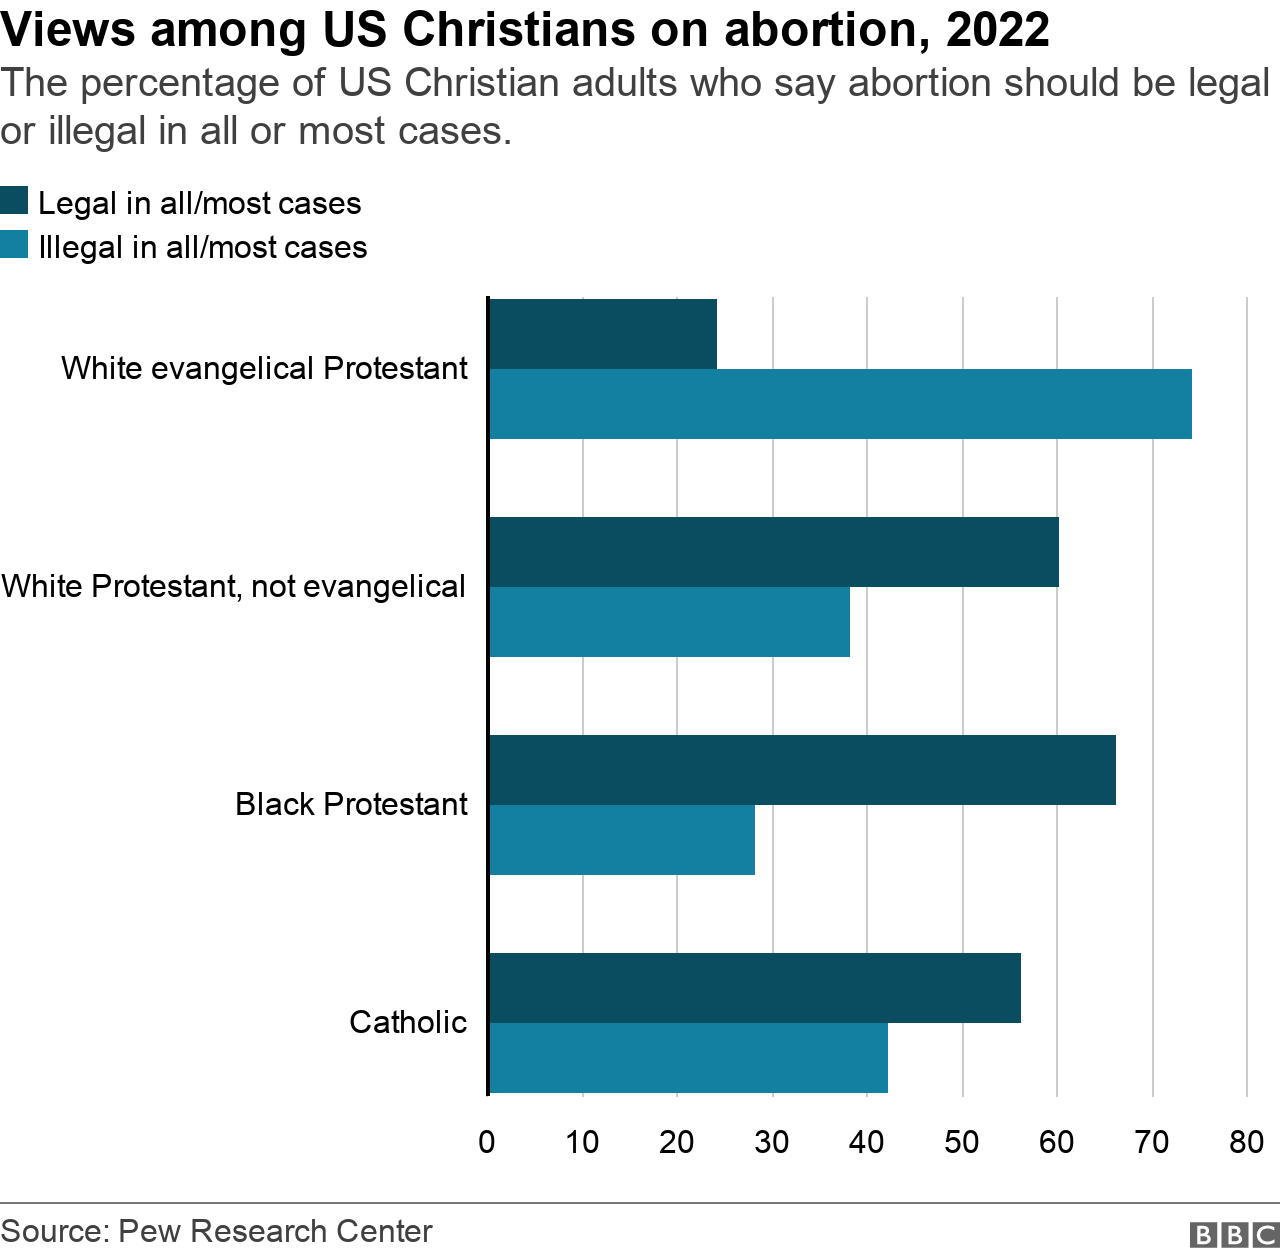 На этом графике показан процент христиан в США, которые считают, что аборты должны быть законными или незаконными во всех или в большинстве случаев.